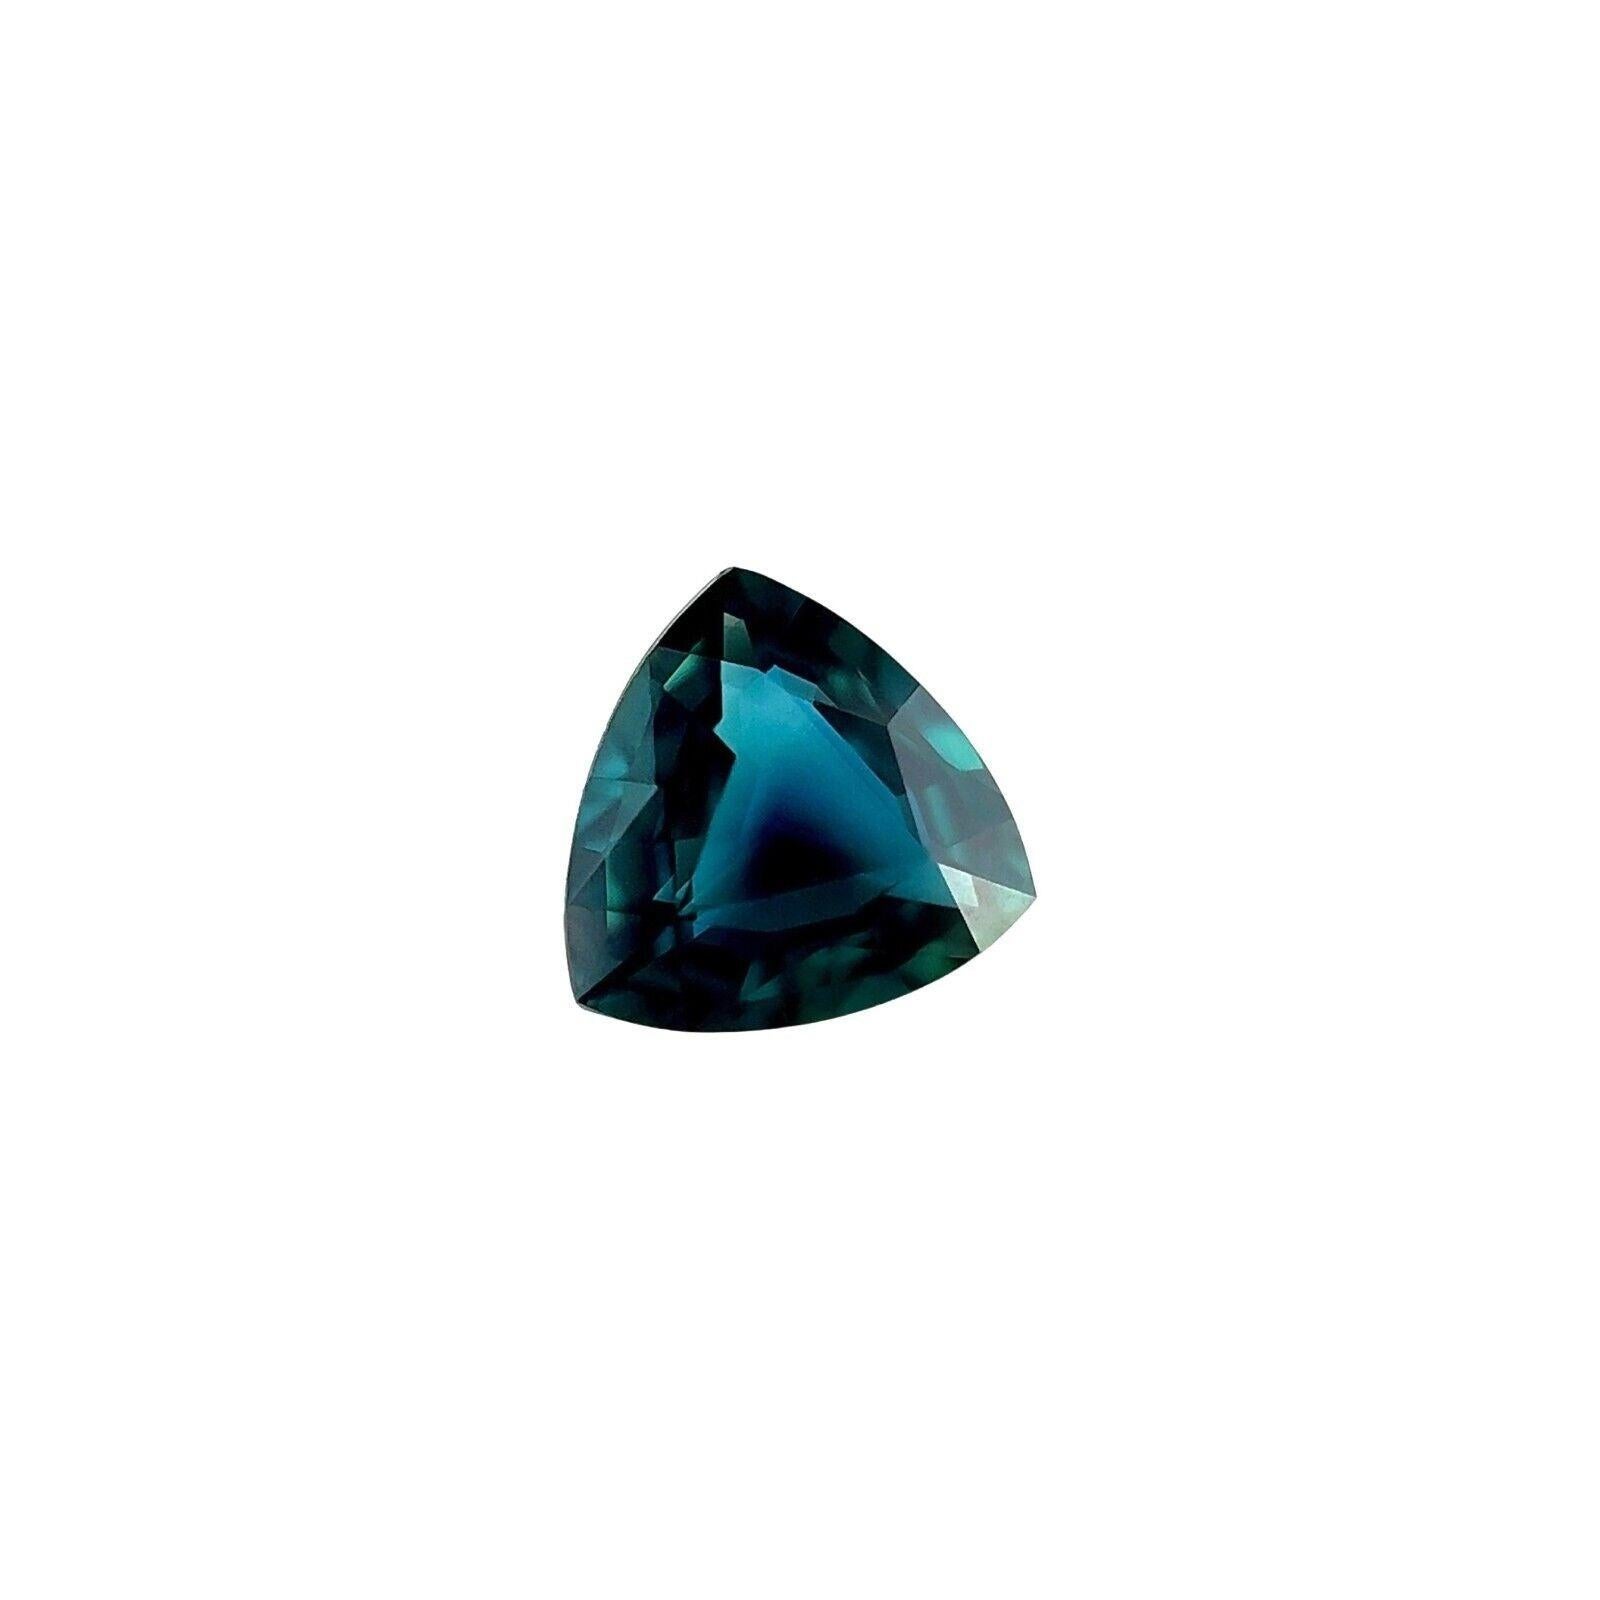 Saphir bleu de 1,15 carat non traité, pierre précieuse naturelle de taille triangulaire, certifiée GIA

Saphir bleu profond non traité certifié par la GIA.
Saphir non chauffé de 1,15 carat d'une belle couleur bleu foncé et d'une excellente clarté,